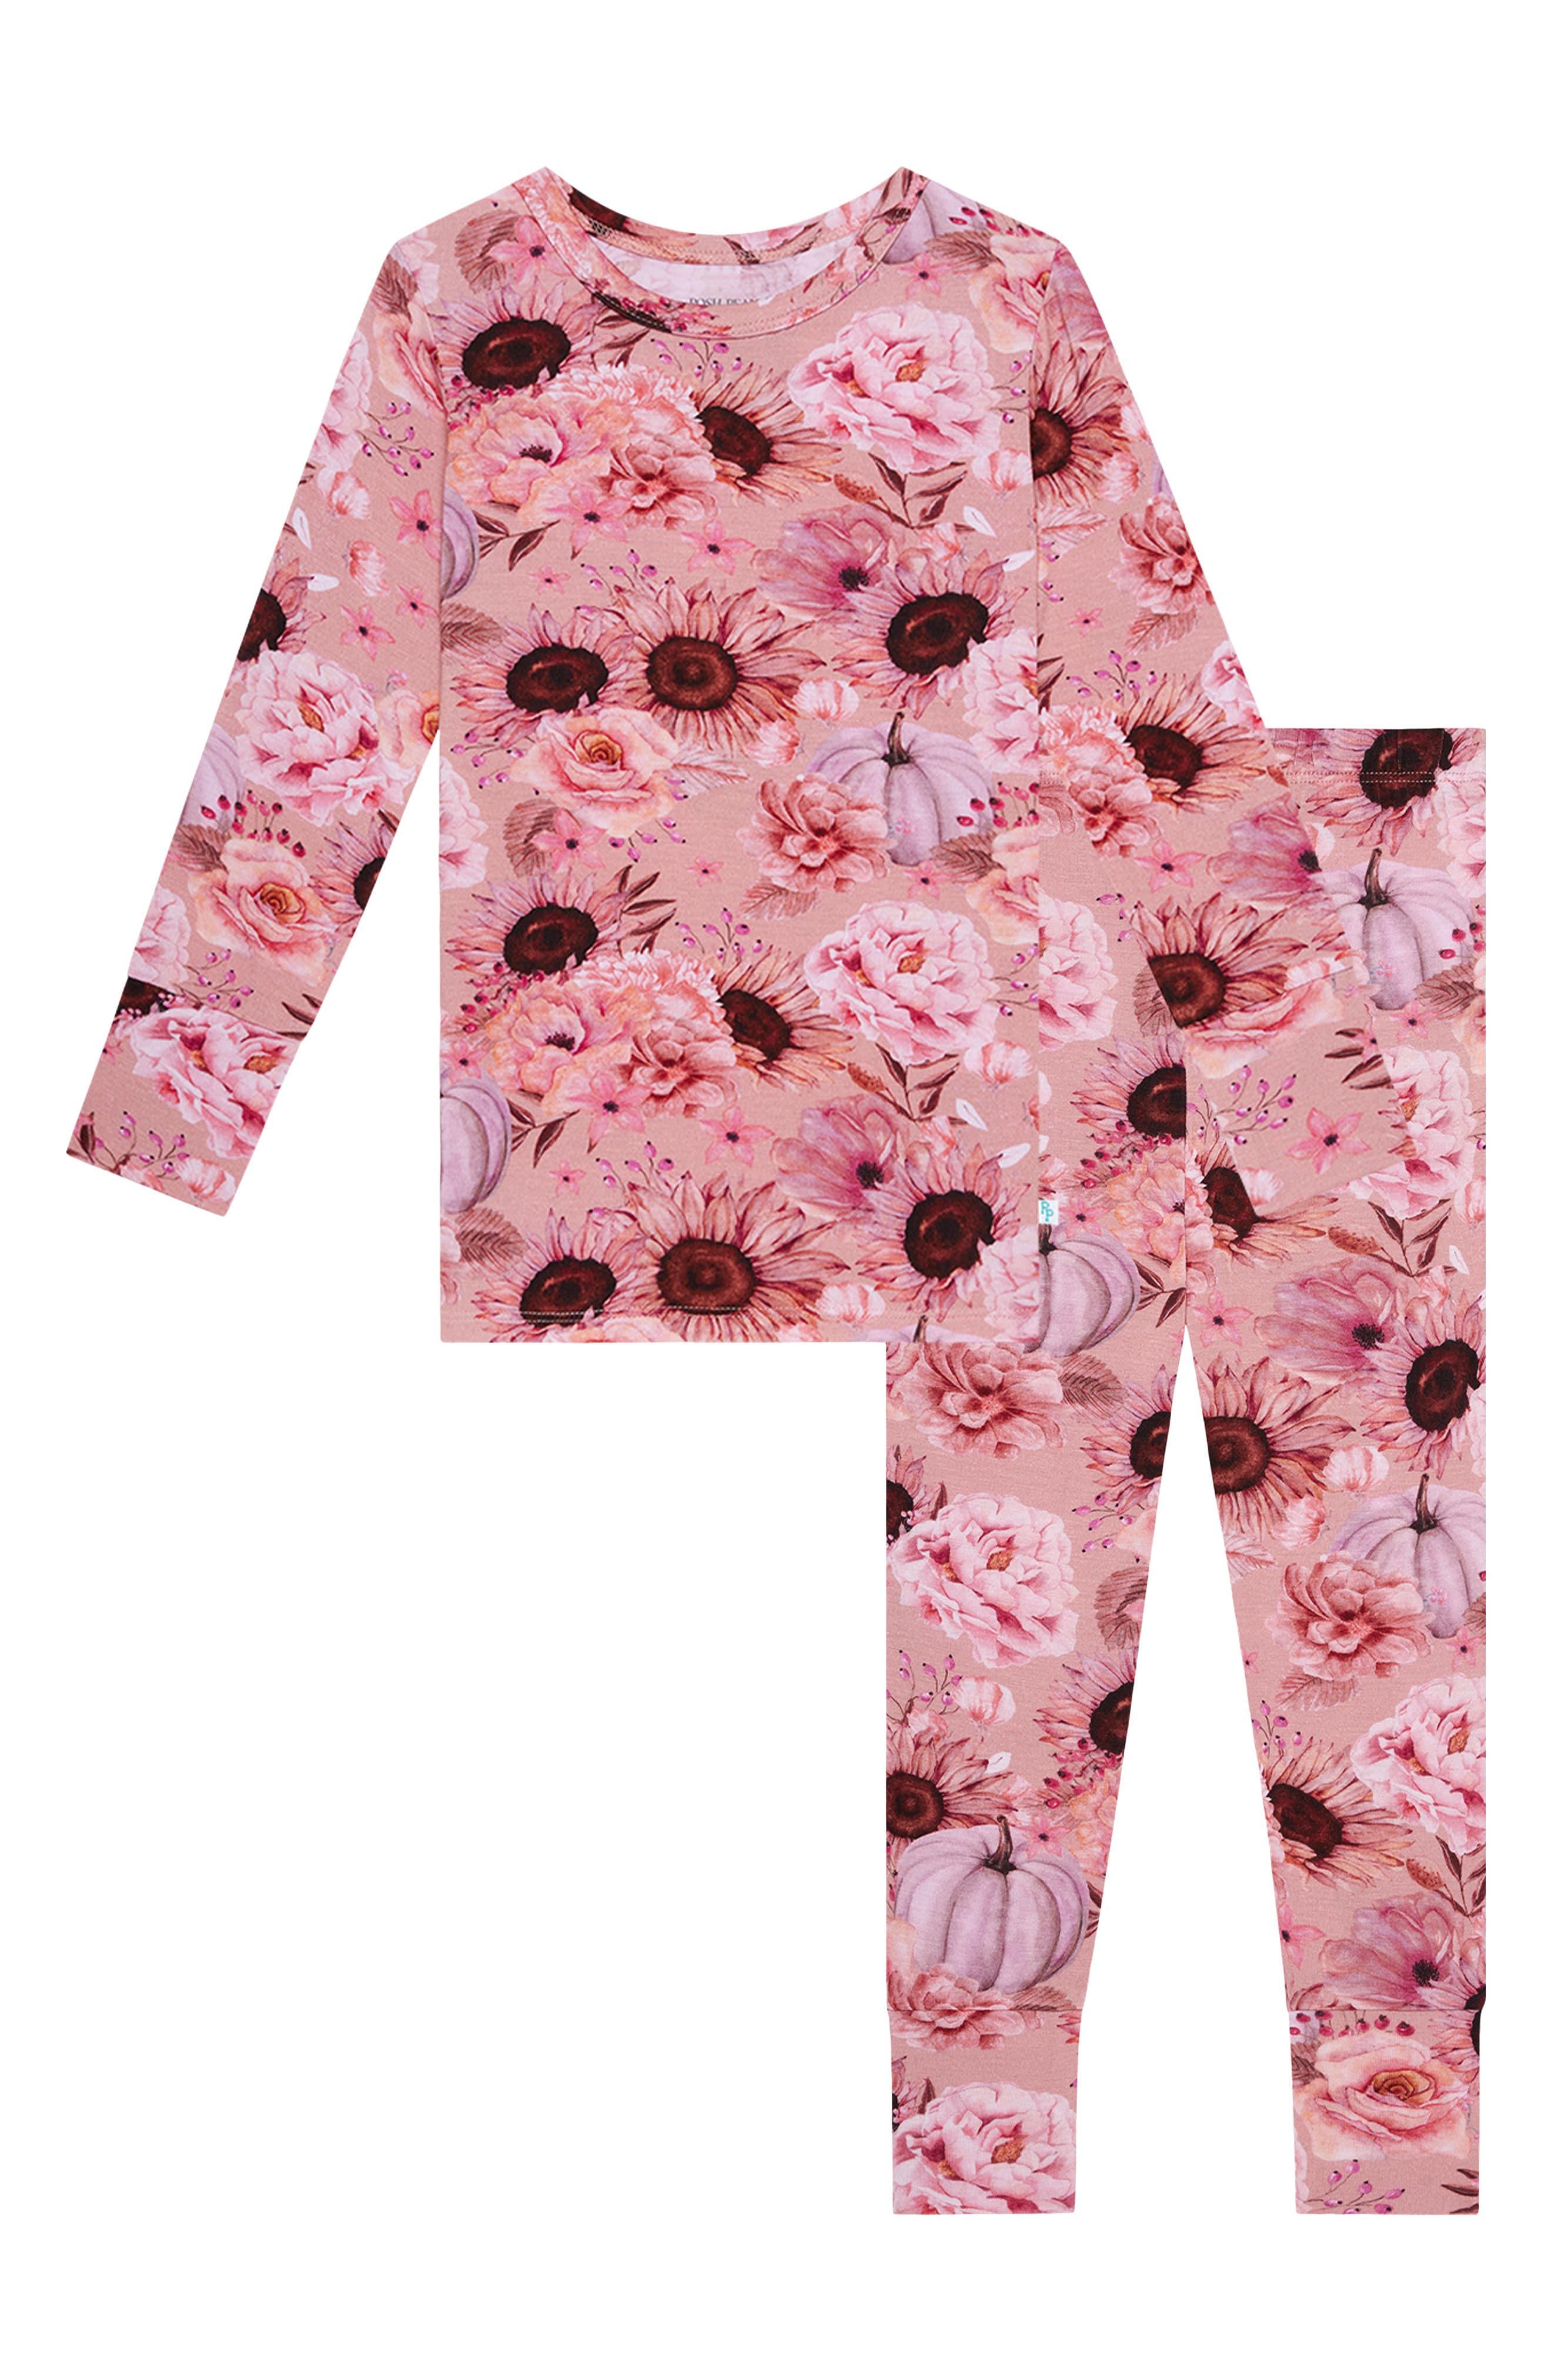 Cool # ZIP IT ! Long Pyjamas Girl Teenage Pink and Black Pjs Emoji Pyjama 